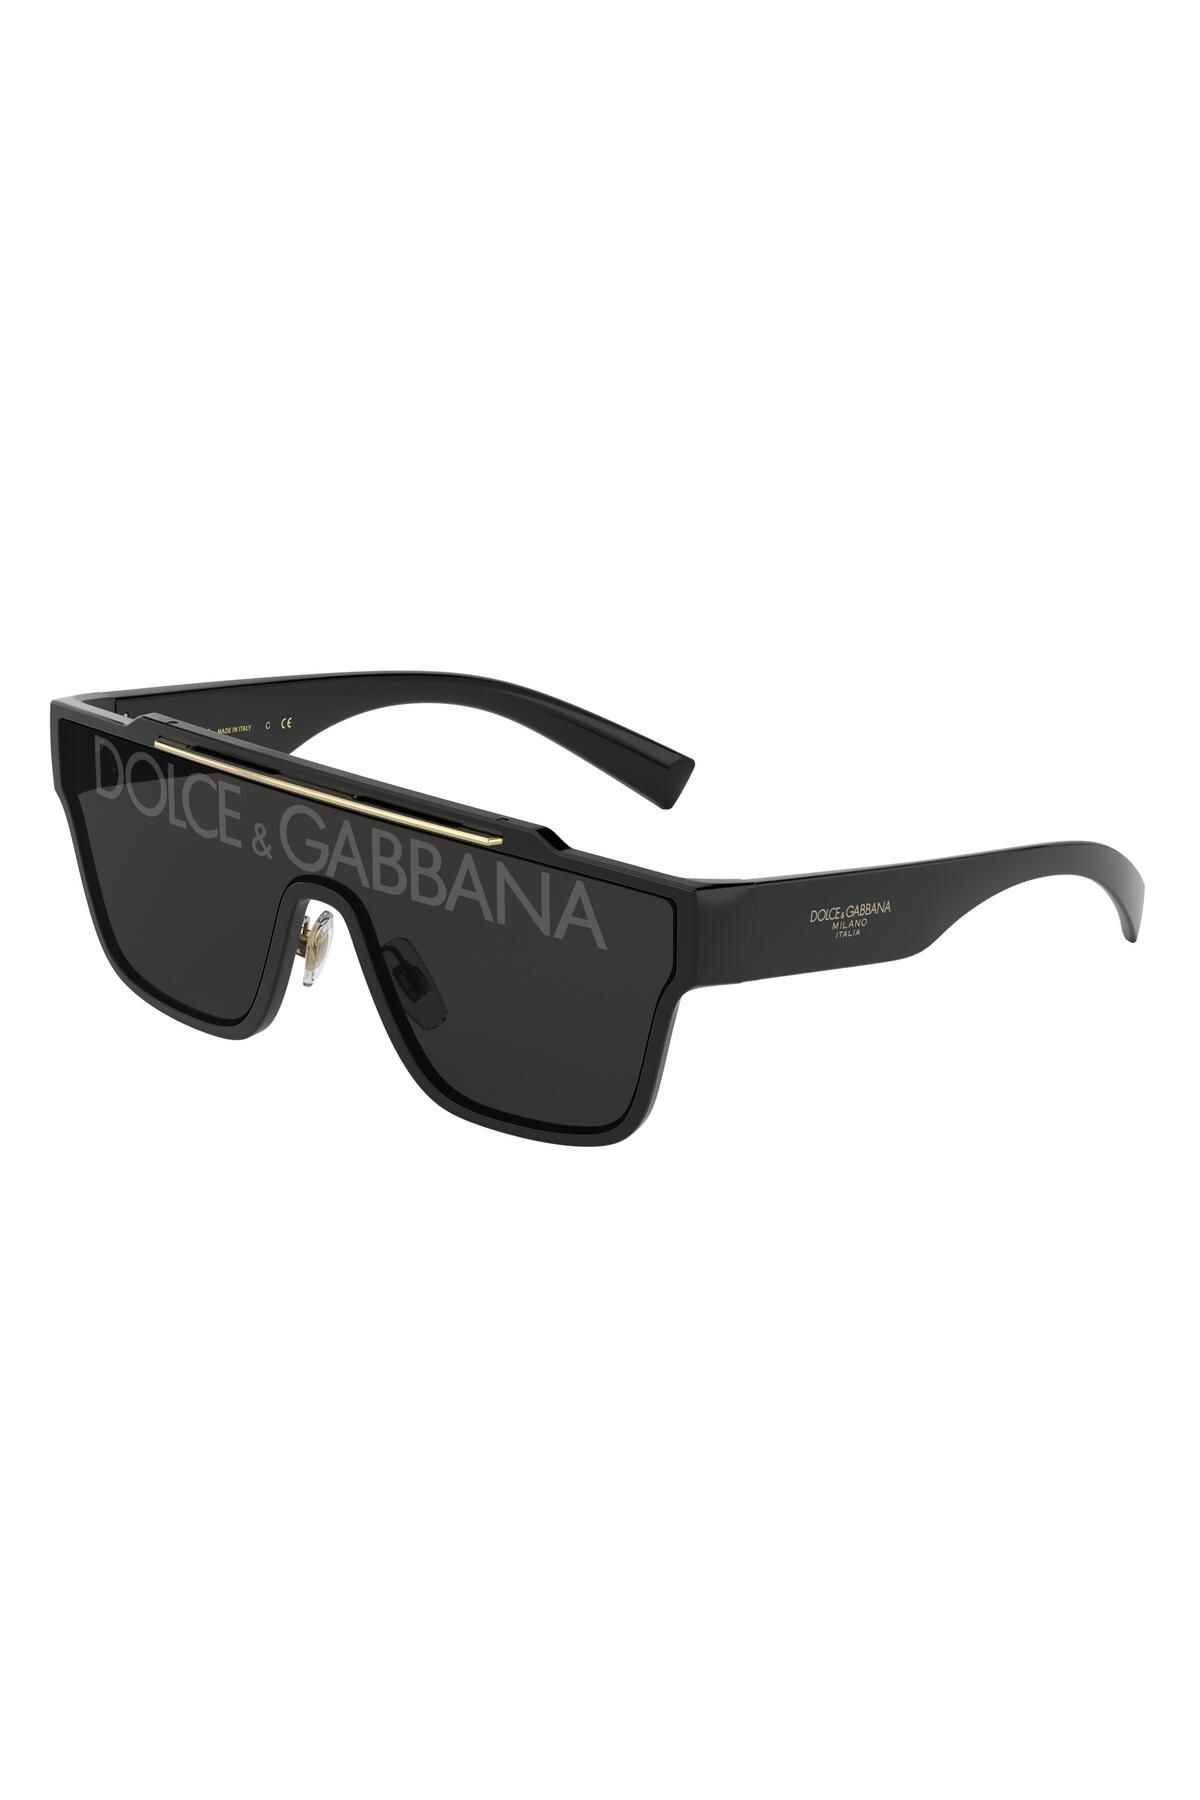 Dolce&Gabbana Dolce & Gabbana 0dg6125 501/m 35-145